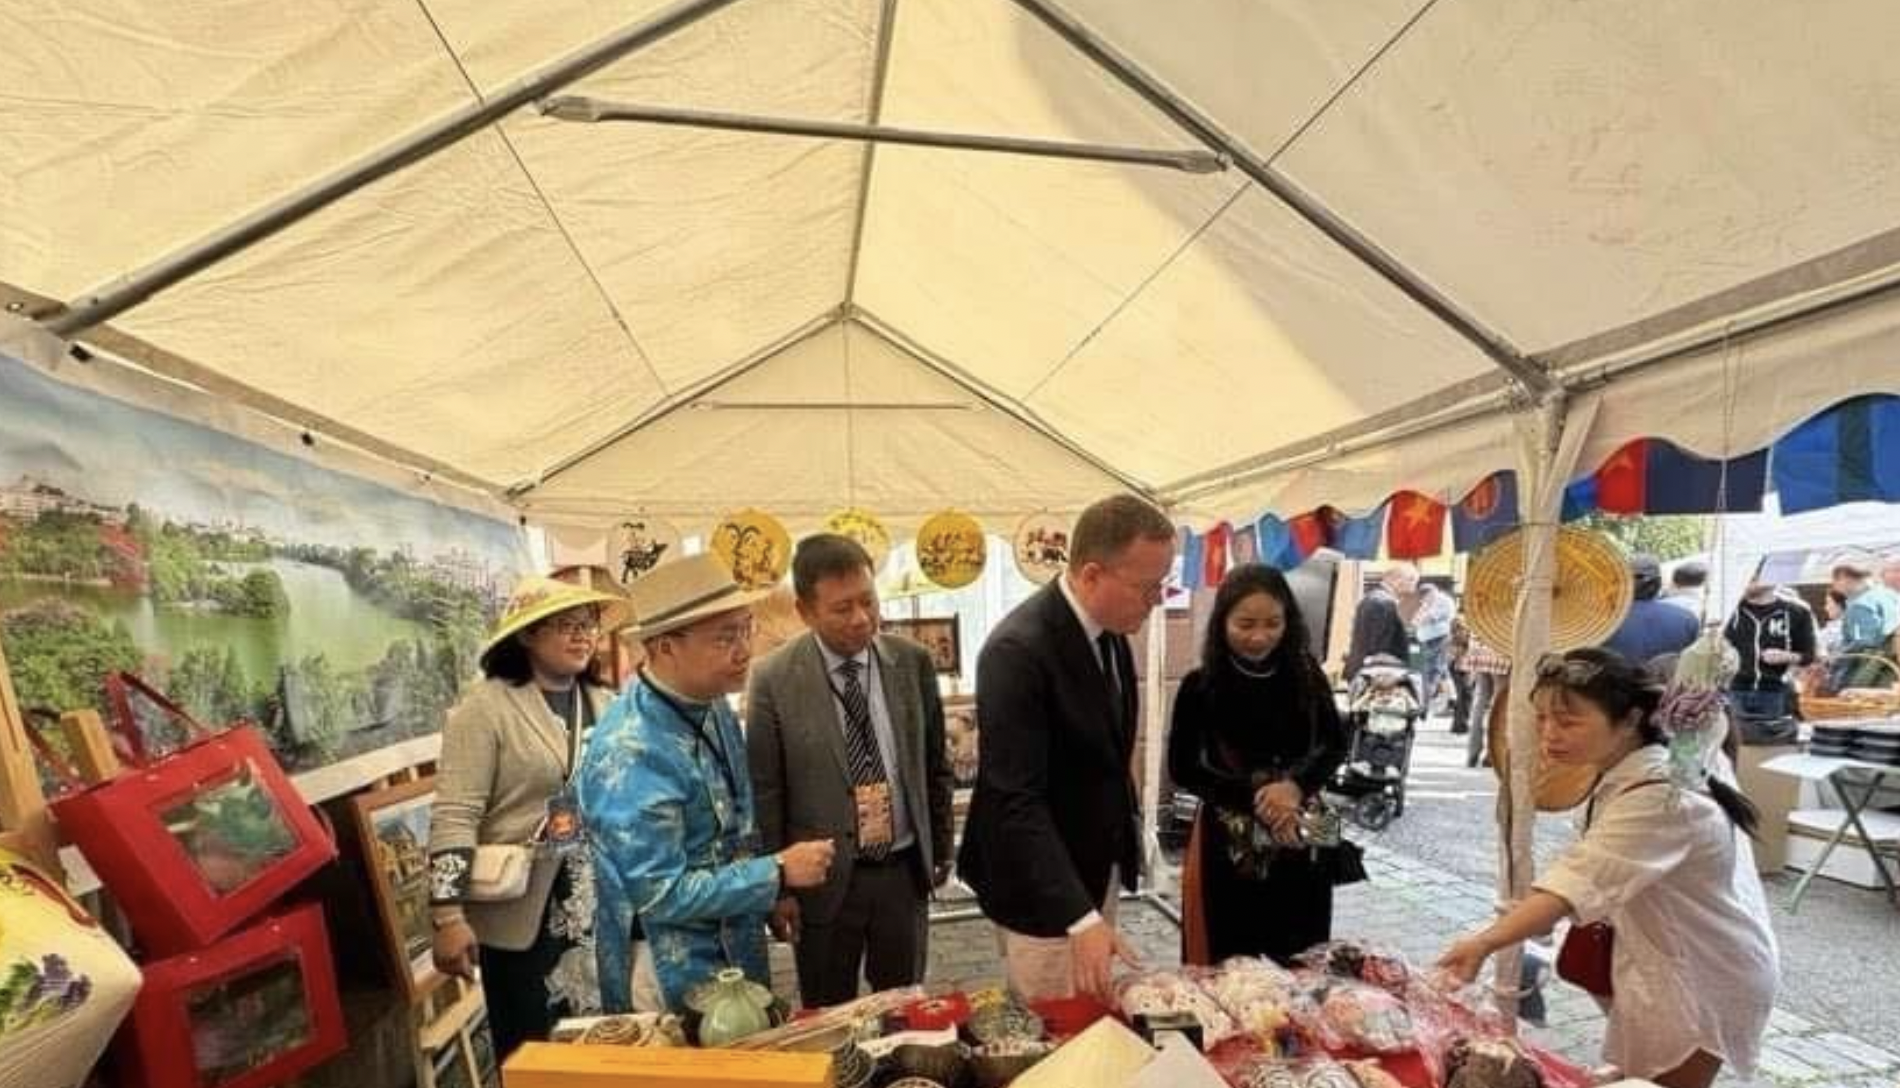 越南驻瑞典大使馆和旅瑞越南人介绍了越南农产品、食品、手工艺品、纺织品、藤竹制品等数百种产品。